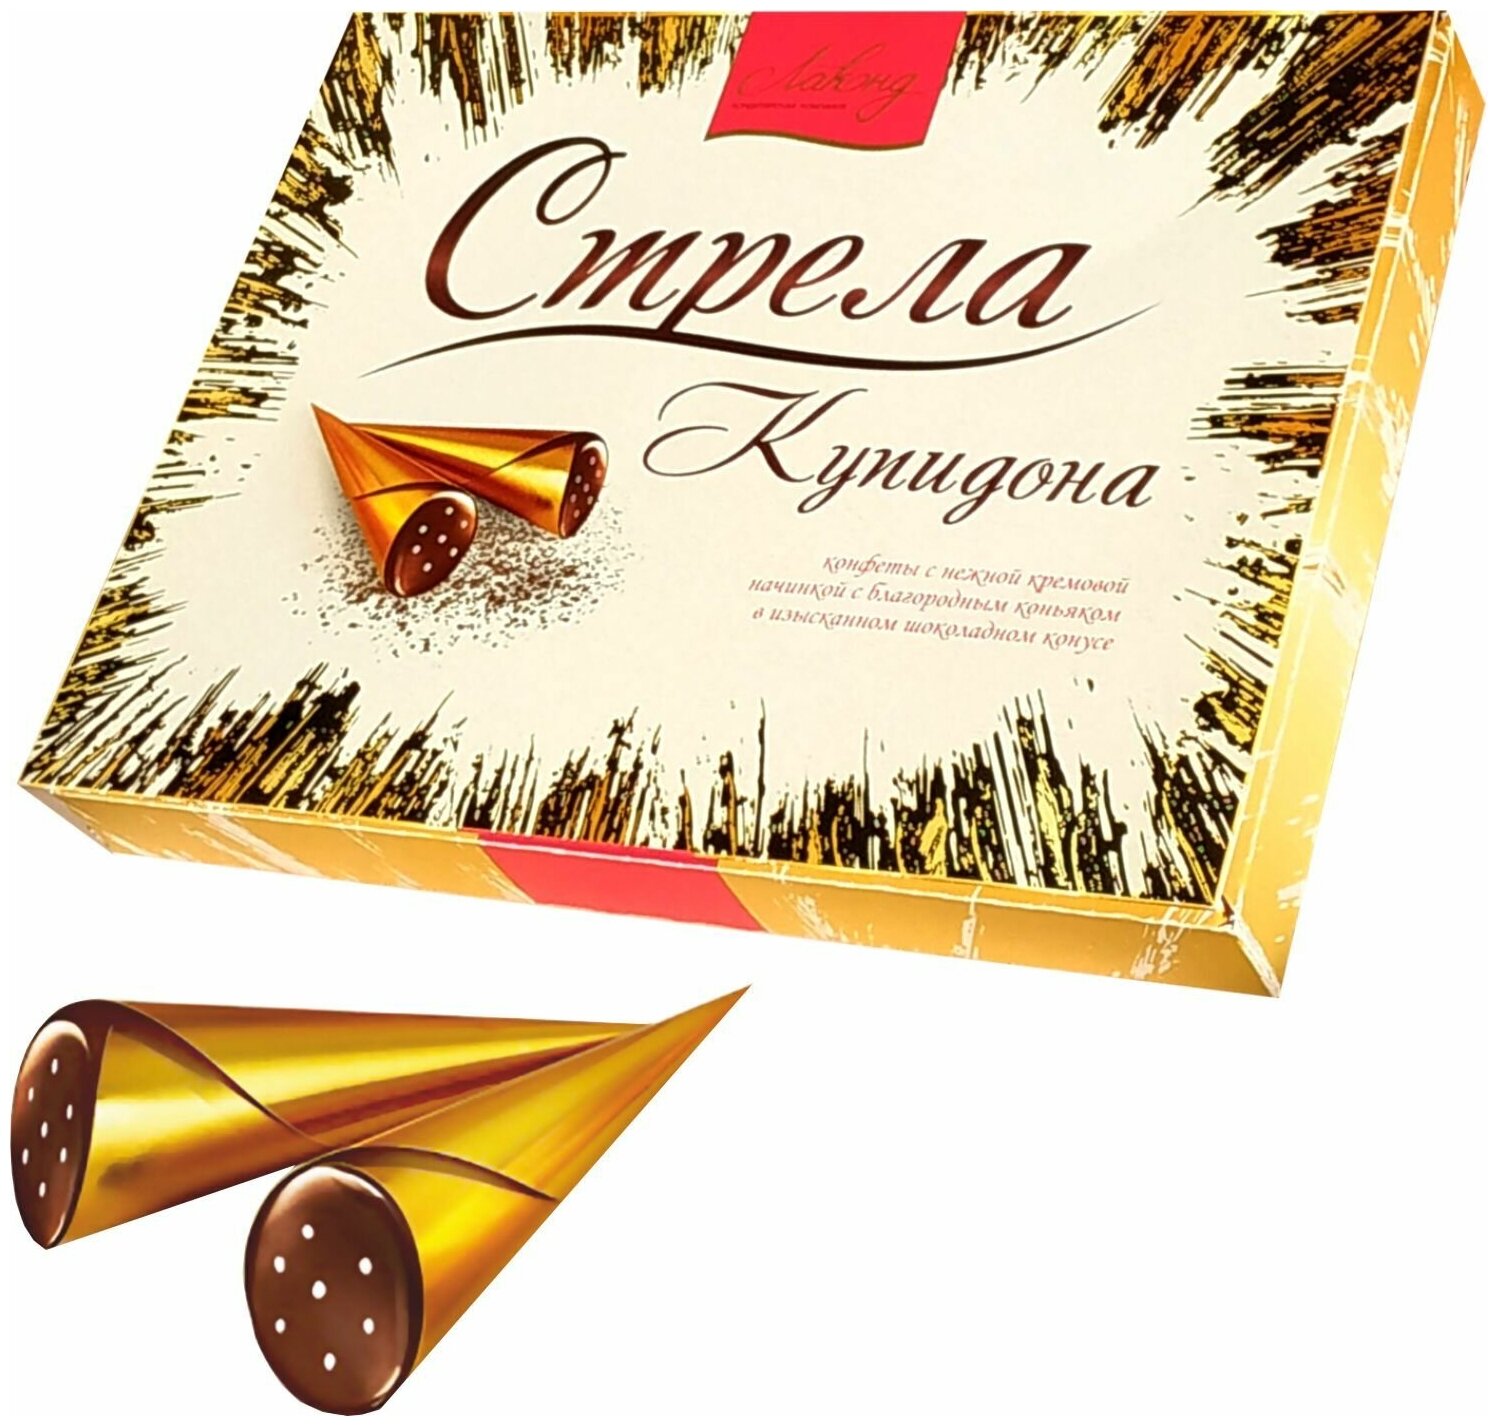 Конфеты в коробке "Стрела Купидона" шоколадные с нежной кремовой начинкой и благородным коньяком, ТМ Лаконд, 160 гр.